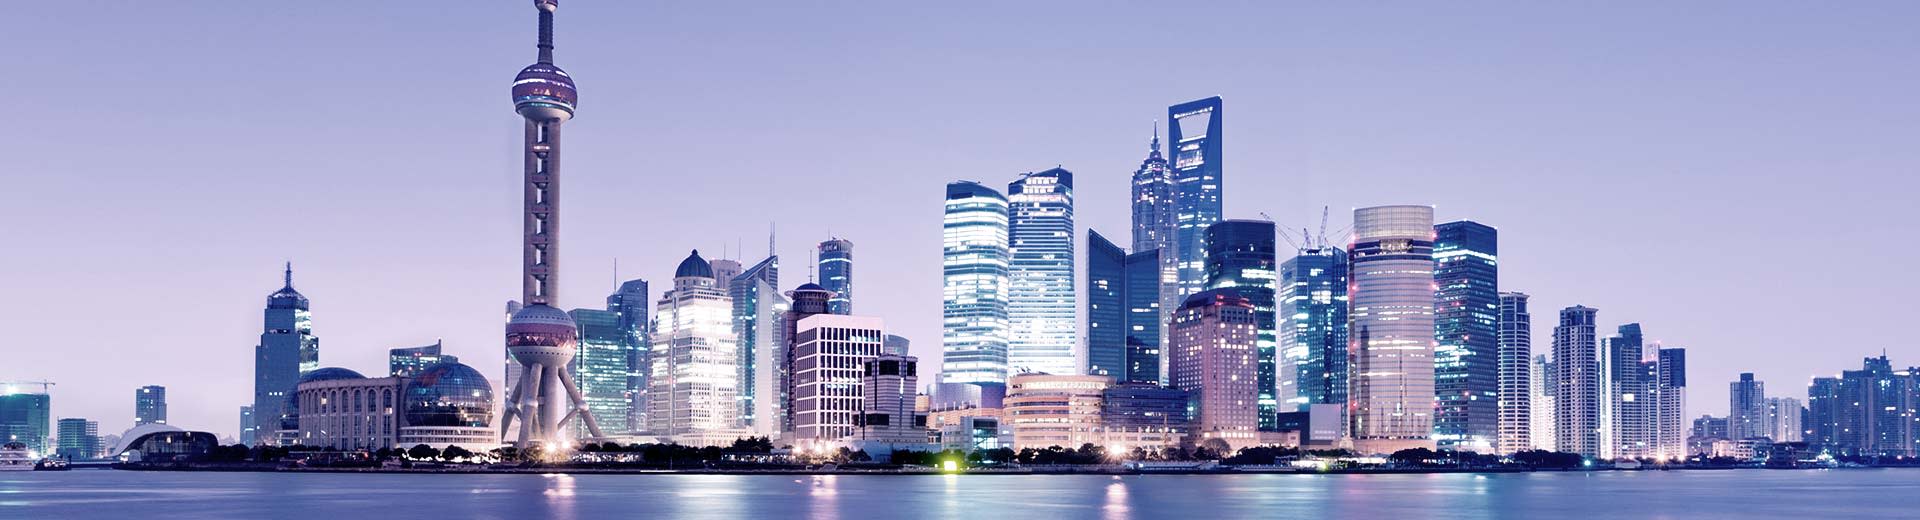 上海のスカイラインは、夕暮れ時の半端ない明るさの中、近代的でそびえ立つ多数の高層ビルで光り輝いている。